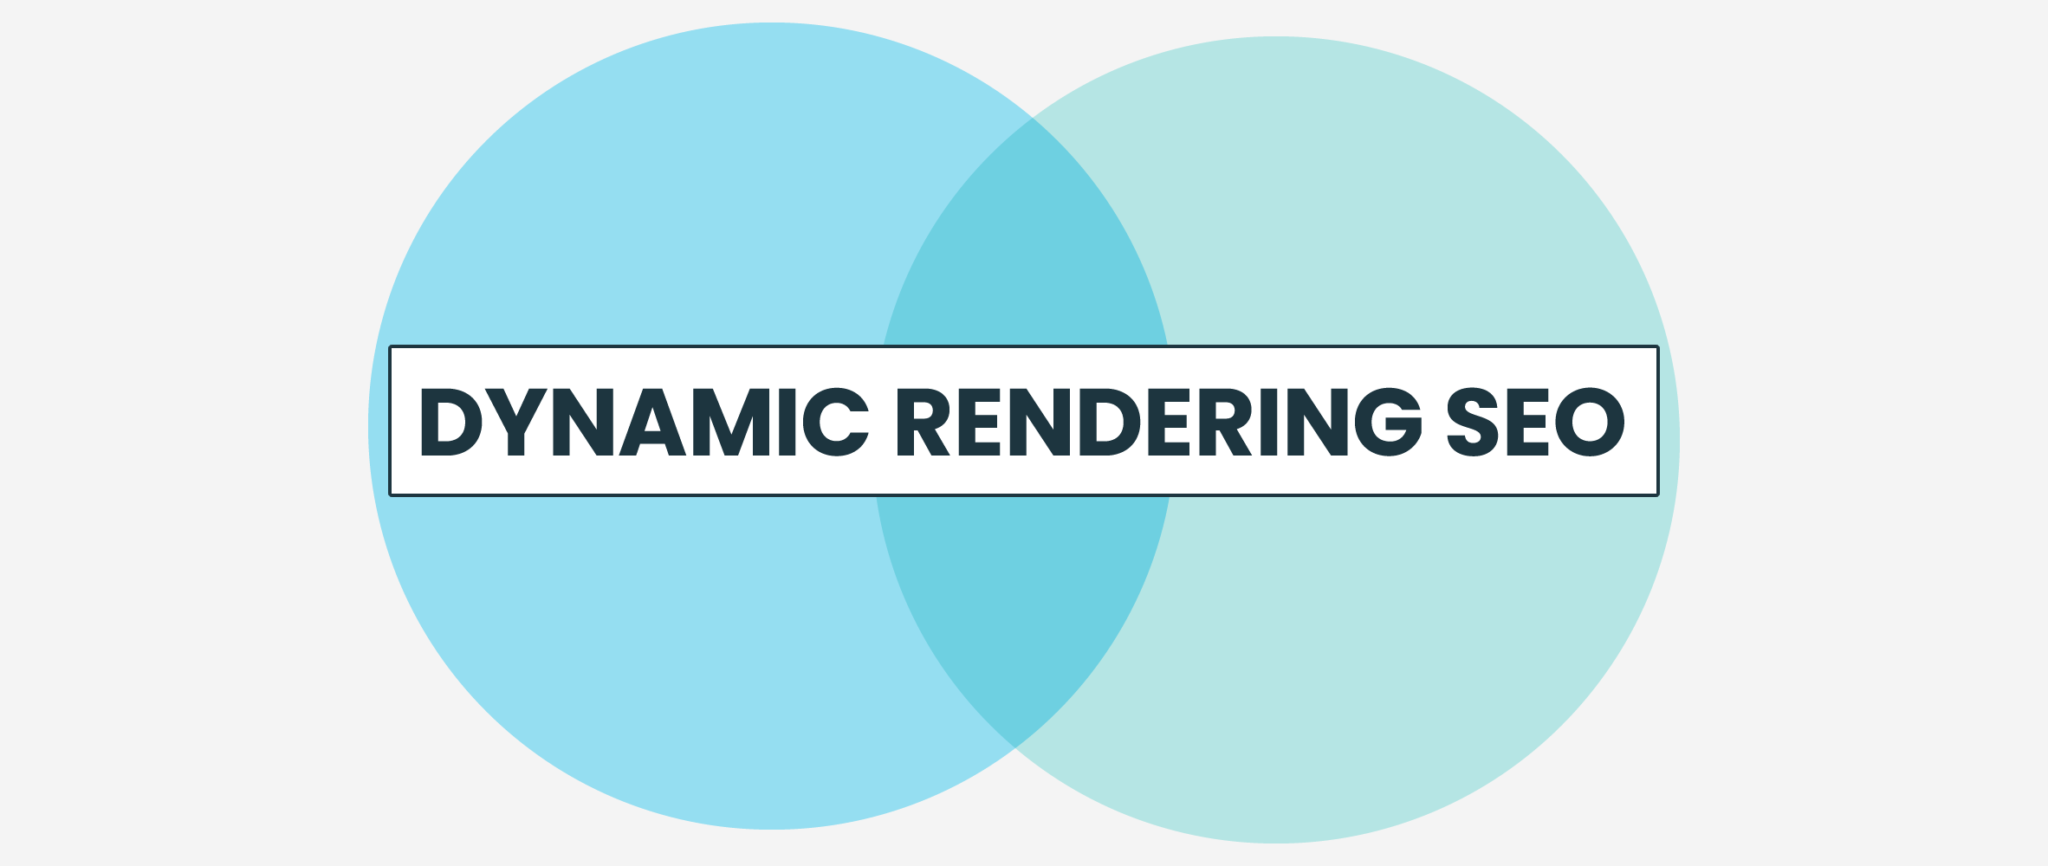 Che cos'è il dynamic rendering e perché può essere utile